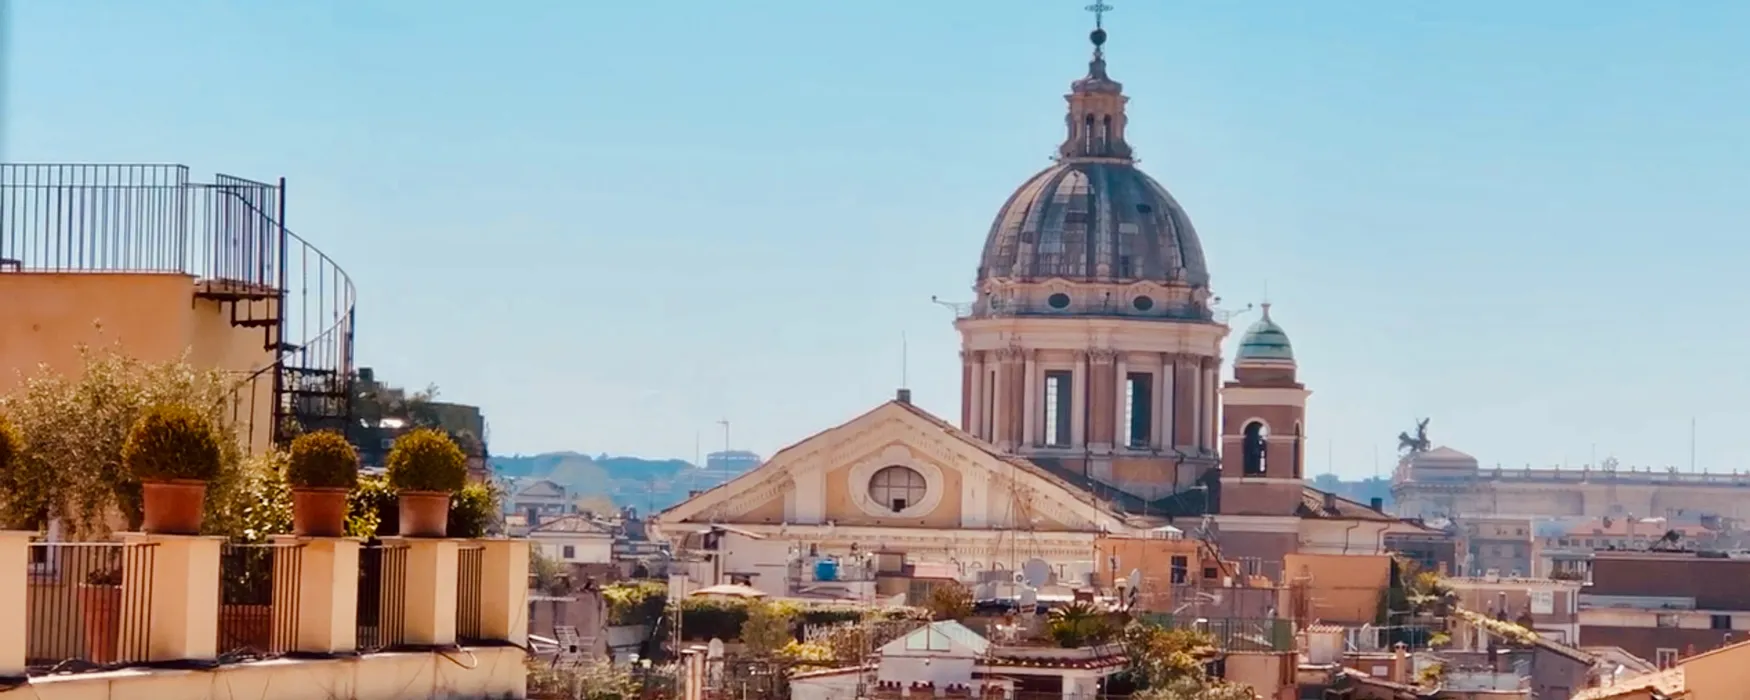 Vind de beste uitzichten van Rome